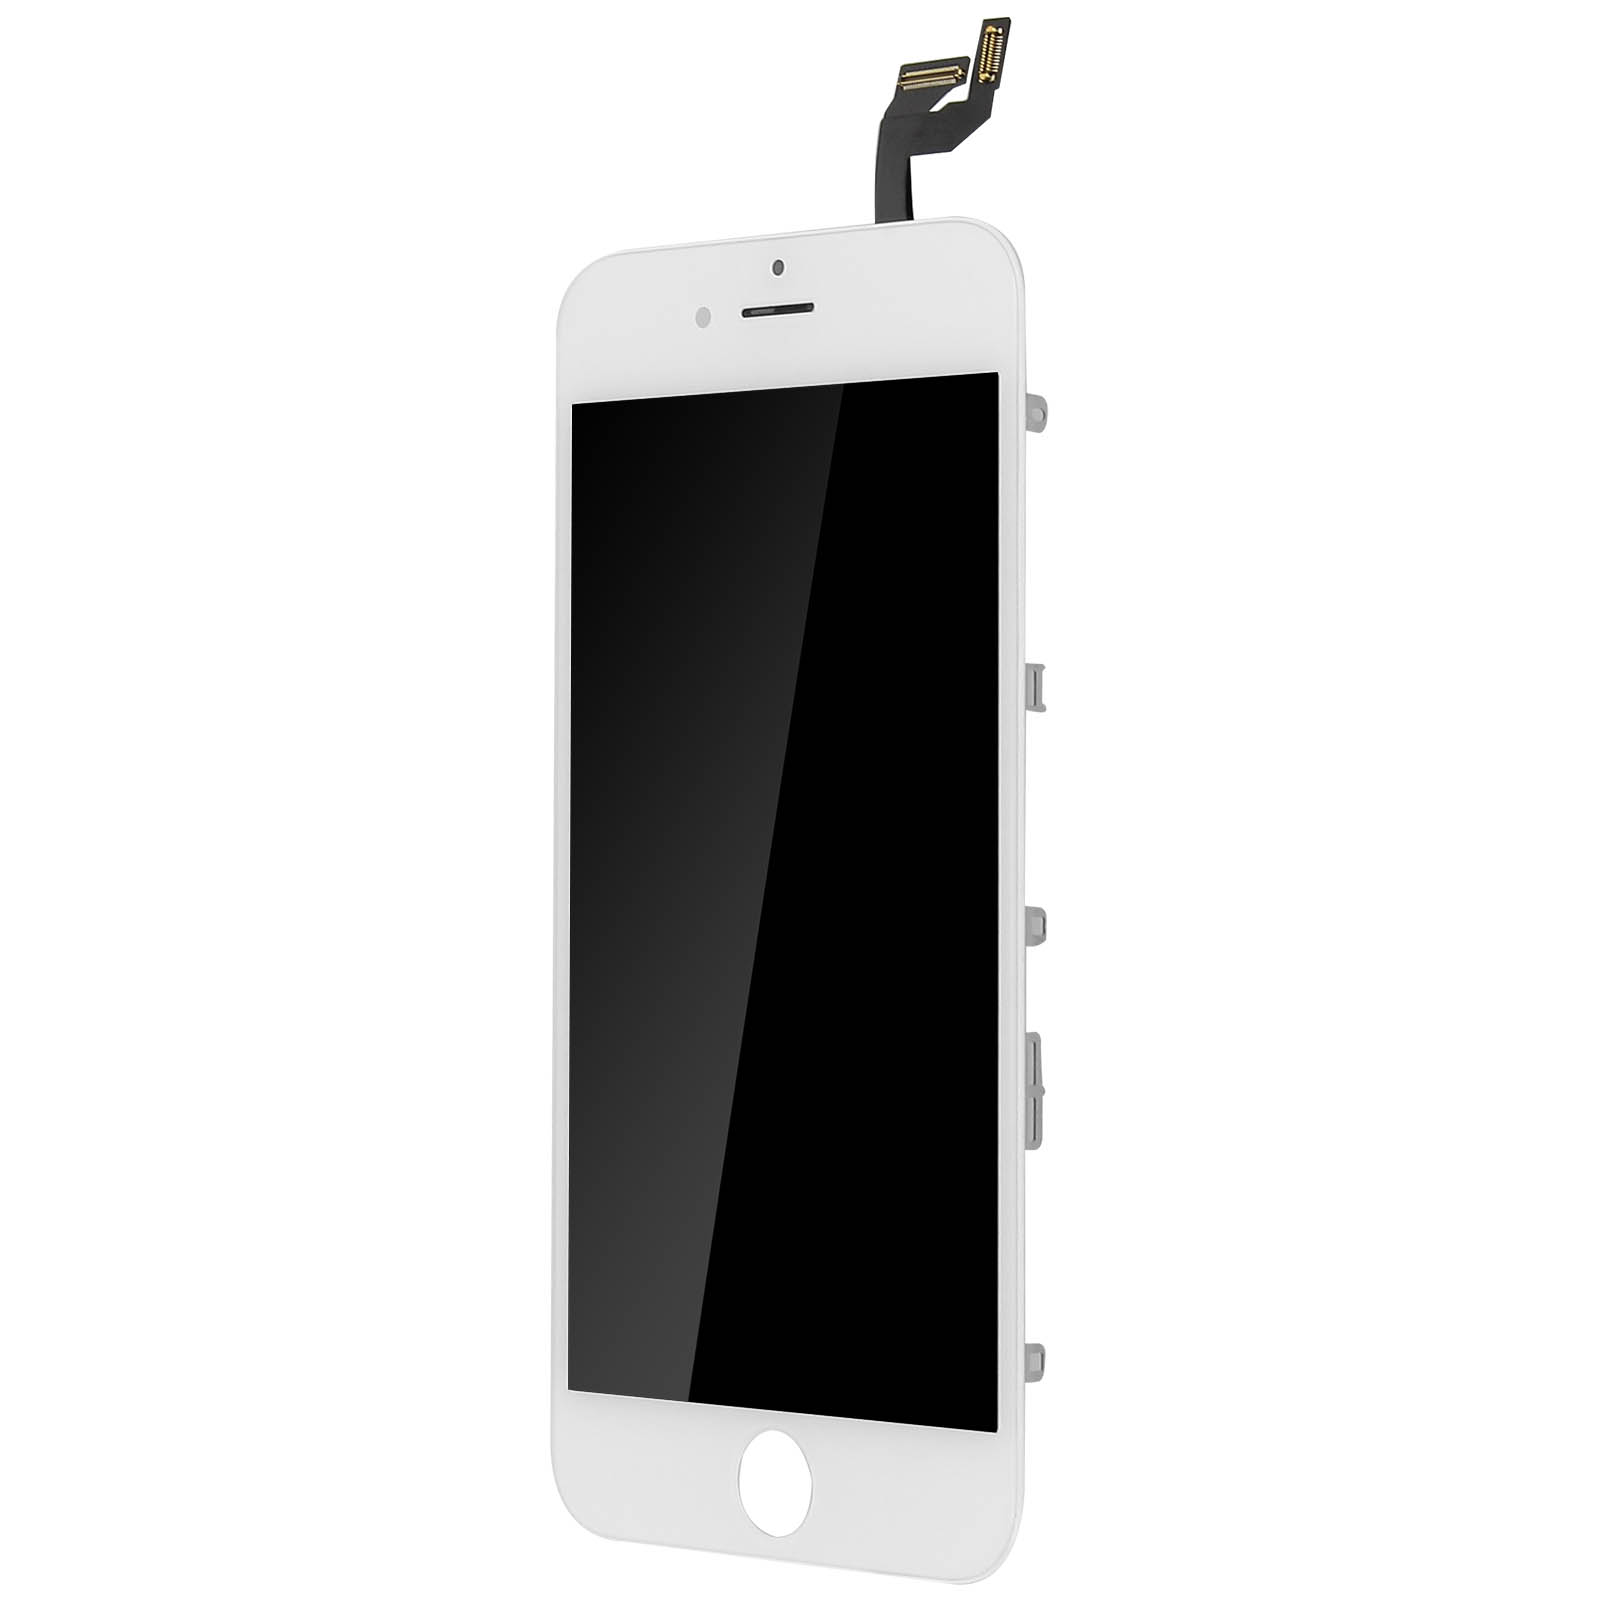 Pantalla Display Tactil Celular iPhone 6s